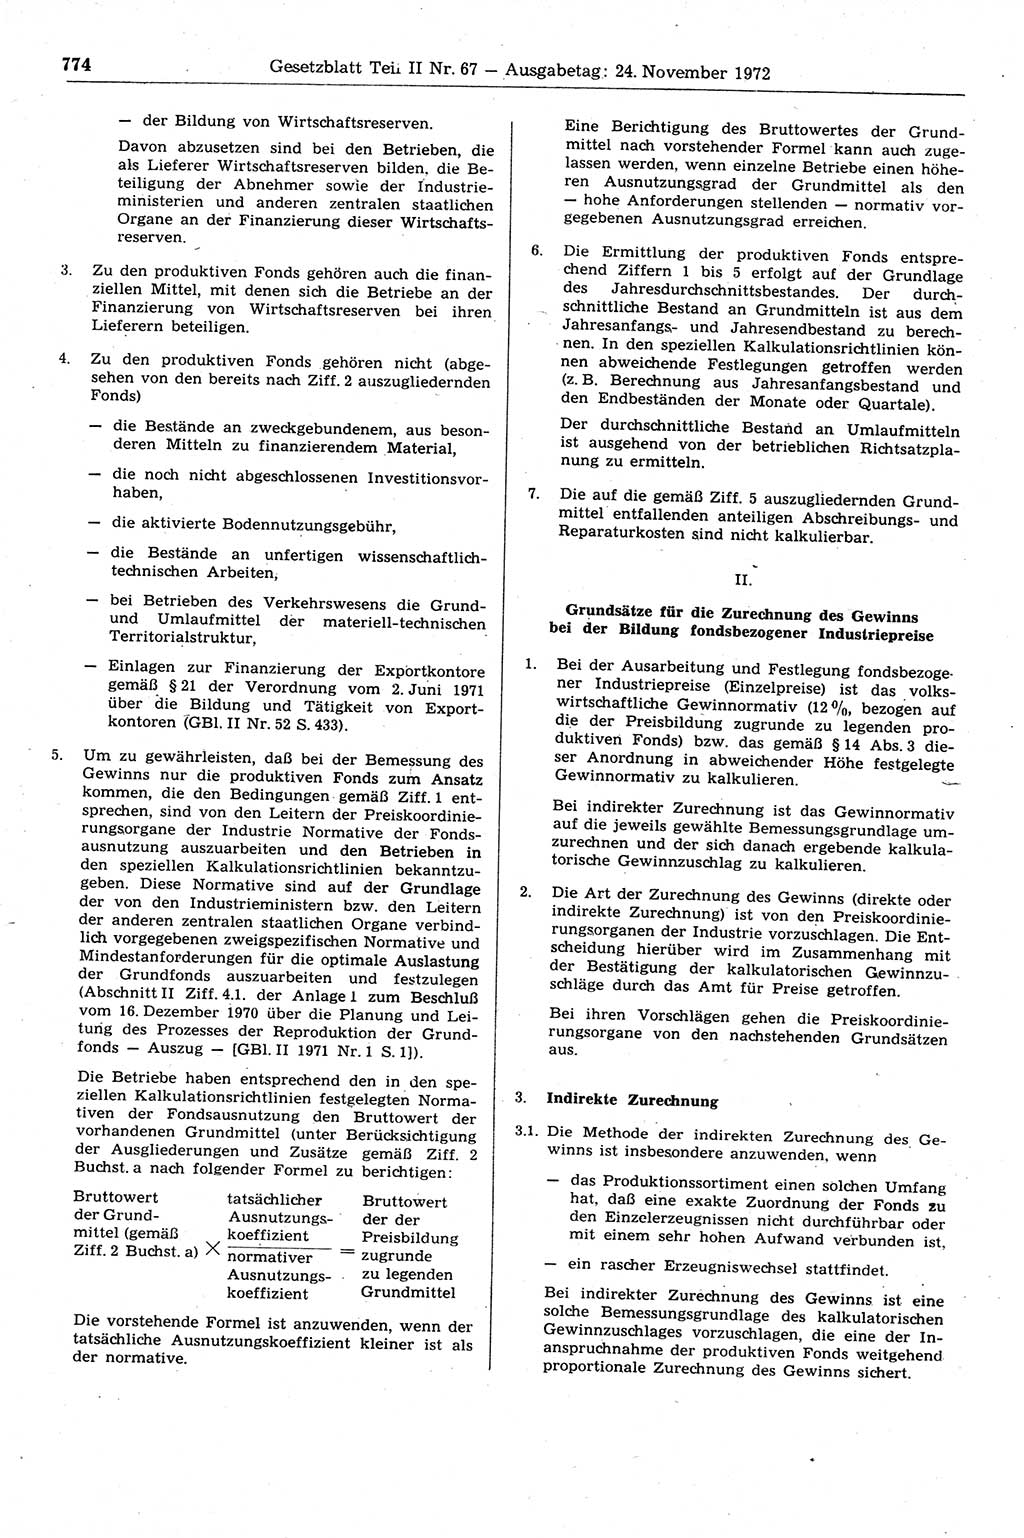 Gesetzblatt (GBl.) der Deutschen Demokratischen Republik (DDR) Teil ⅠⅠ 1972, Seite 774 (GBl. DDR ⅠⅠ 1972, S. 774)